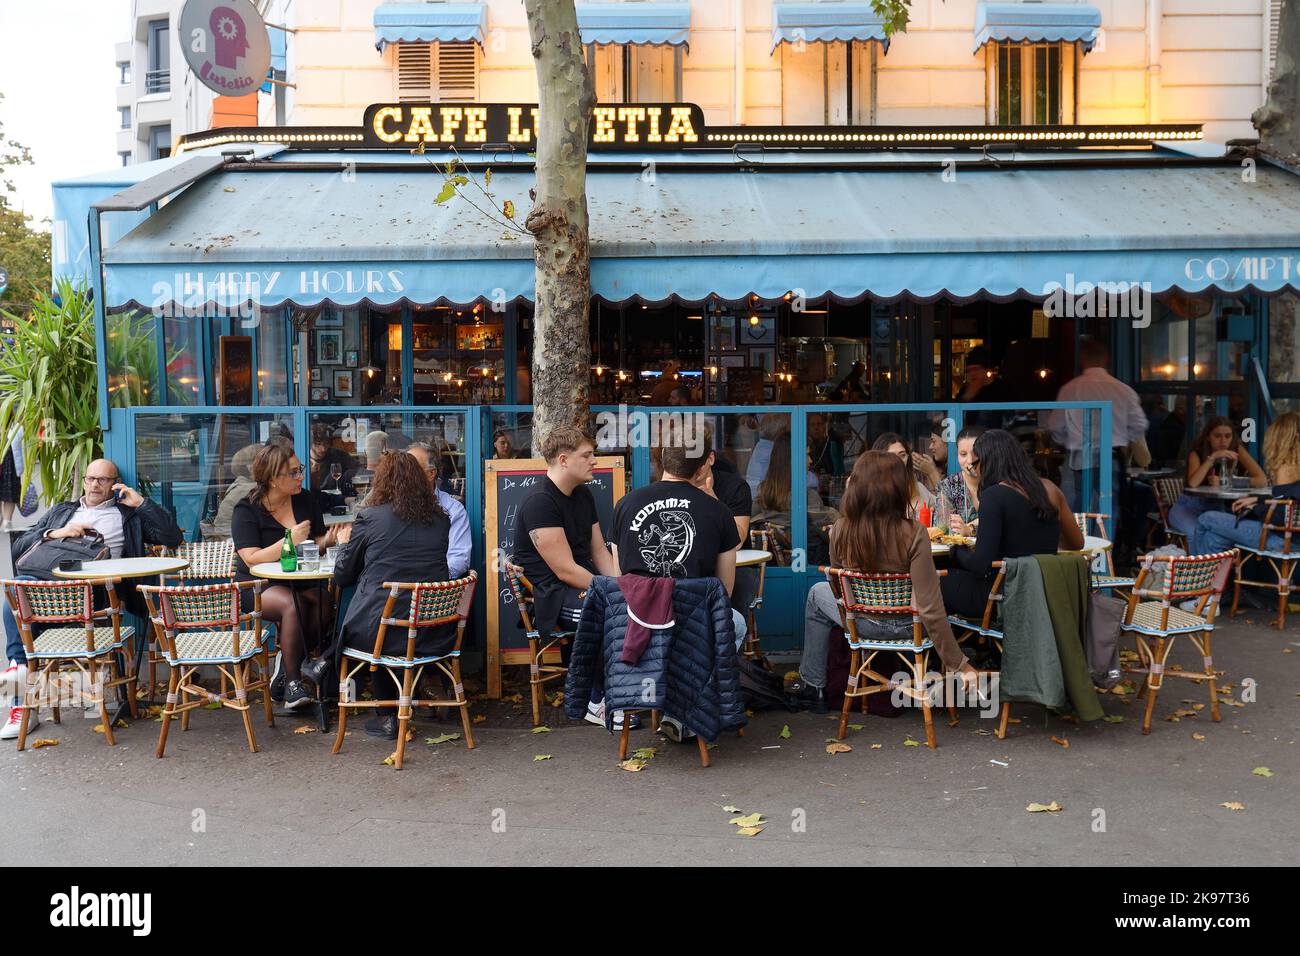 Le café Lutecia est une brasserie qui accueille dans un cadre dédié aux chemins de fer et locomotives. Il est situé dans le quartier 15th de Paris. France. Banque D'Images